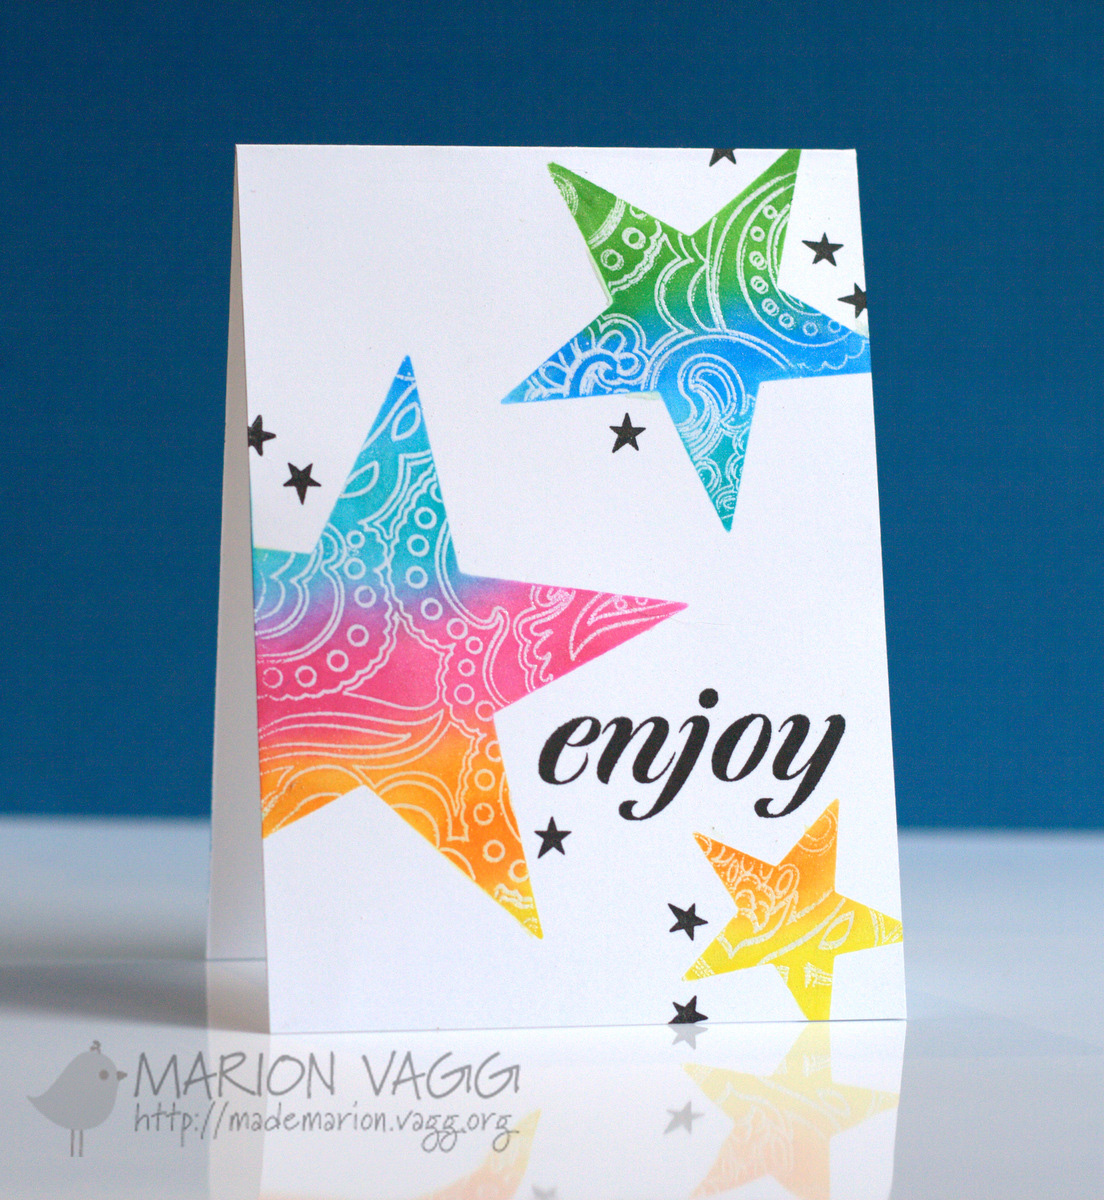 Enjoy|Marion Vagg